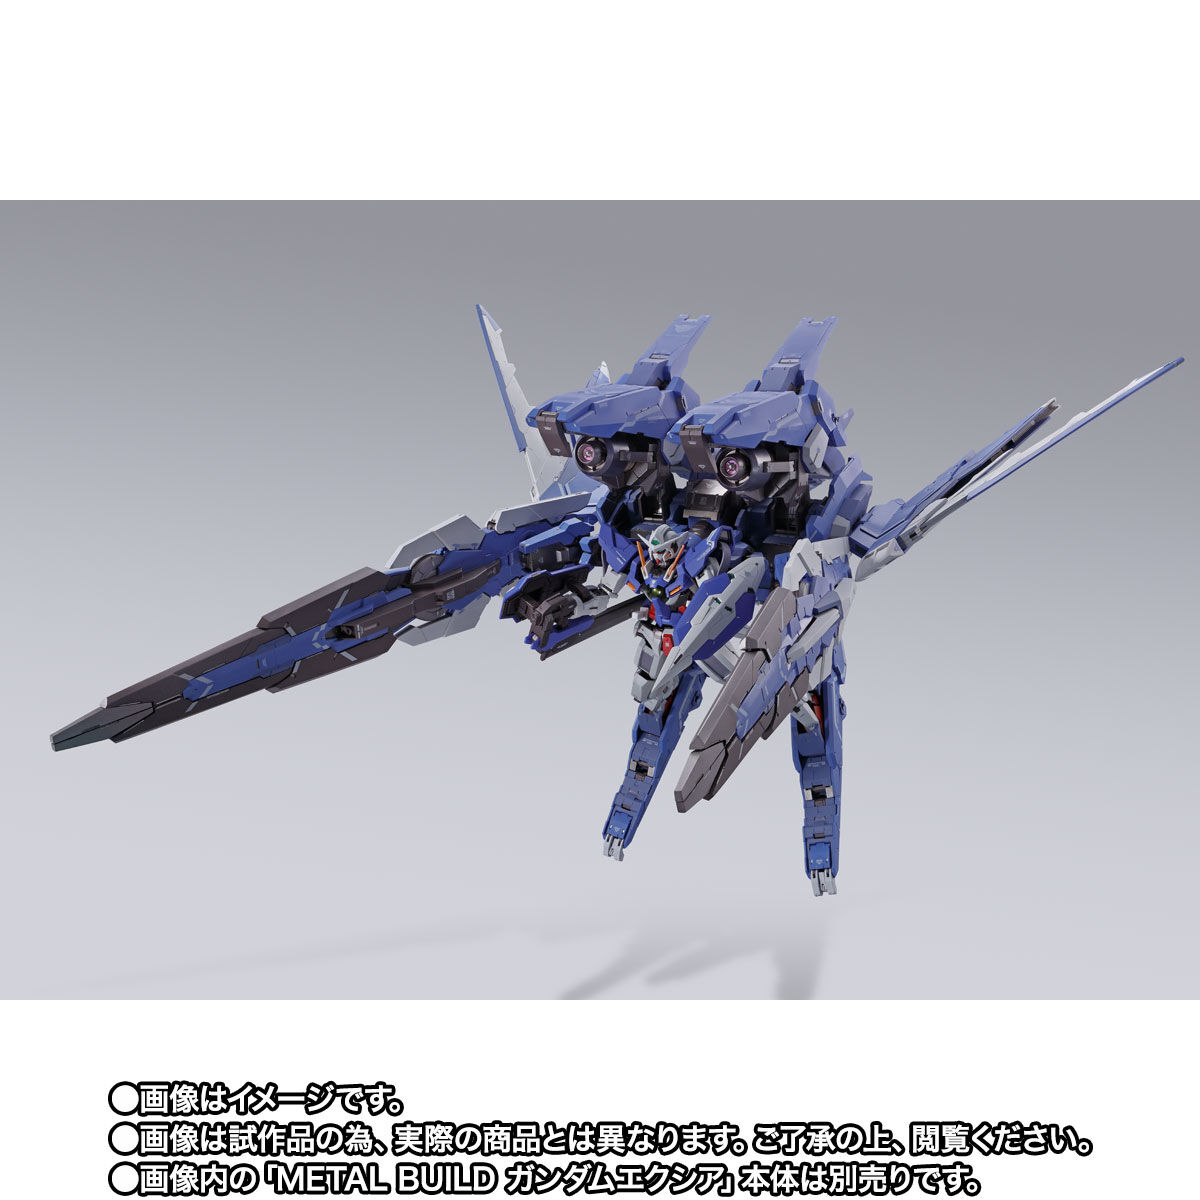 【限定販売】METAL BUILD『GNアームズ TYPE-E』 機動戦士ガンダム00 可動フィギュア-002